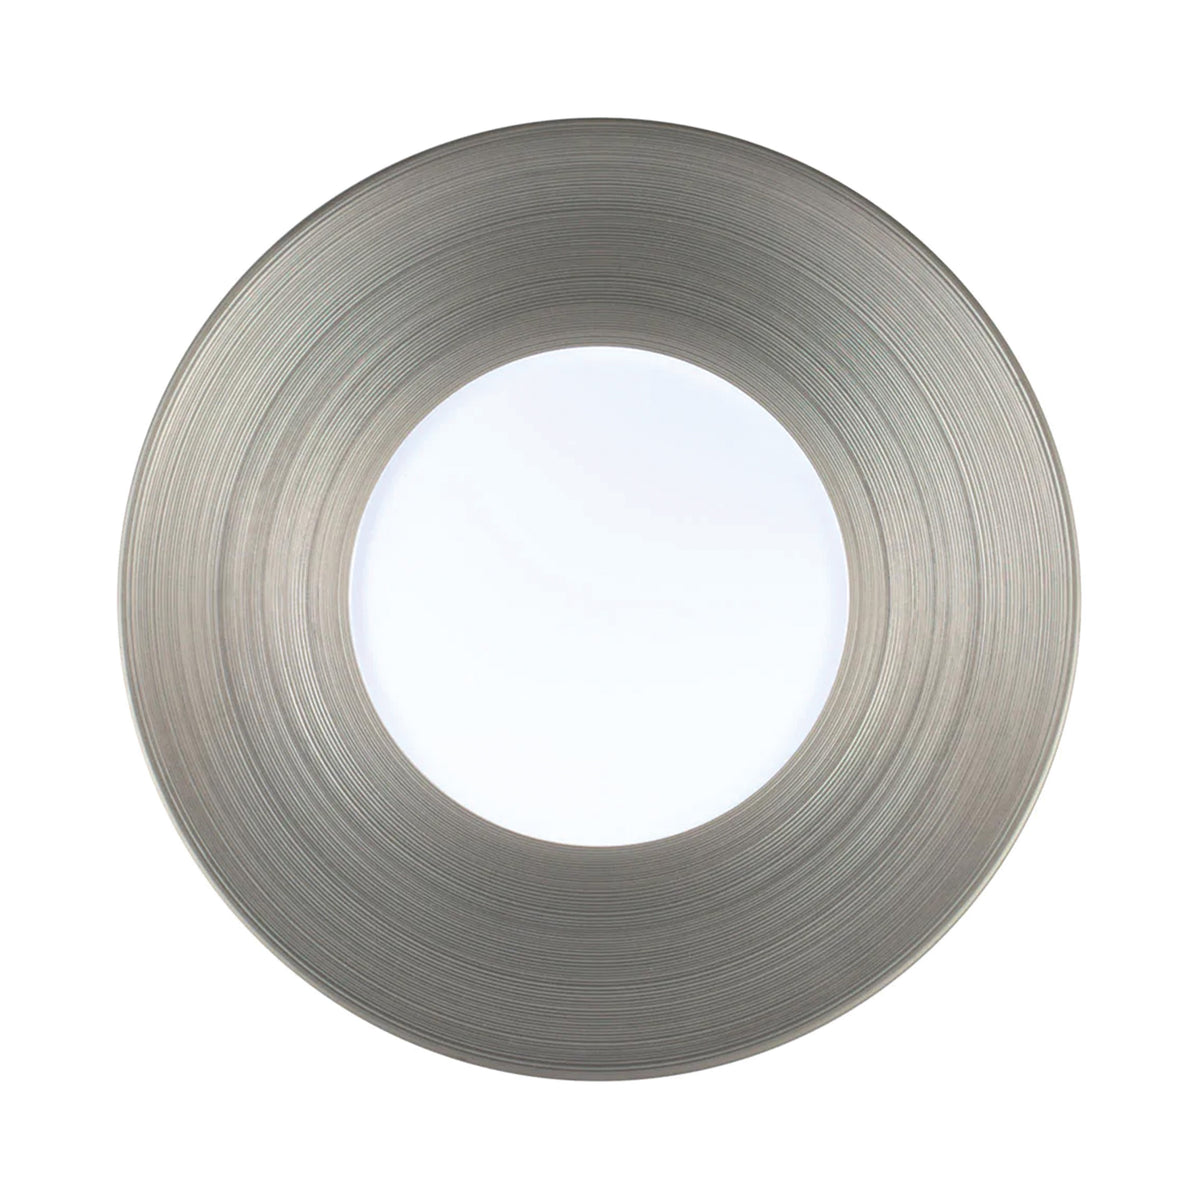 HEMISPHERE Platinum - 29 cm plate